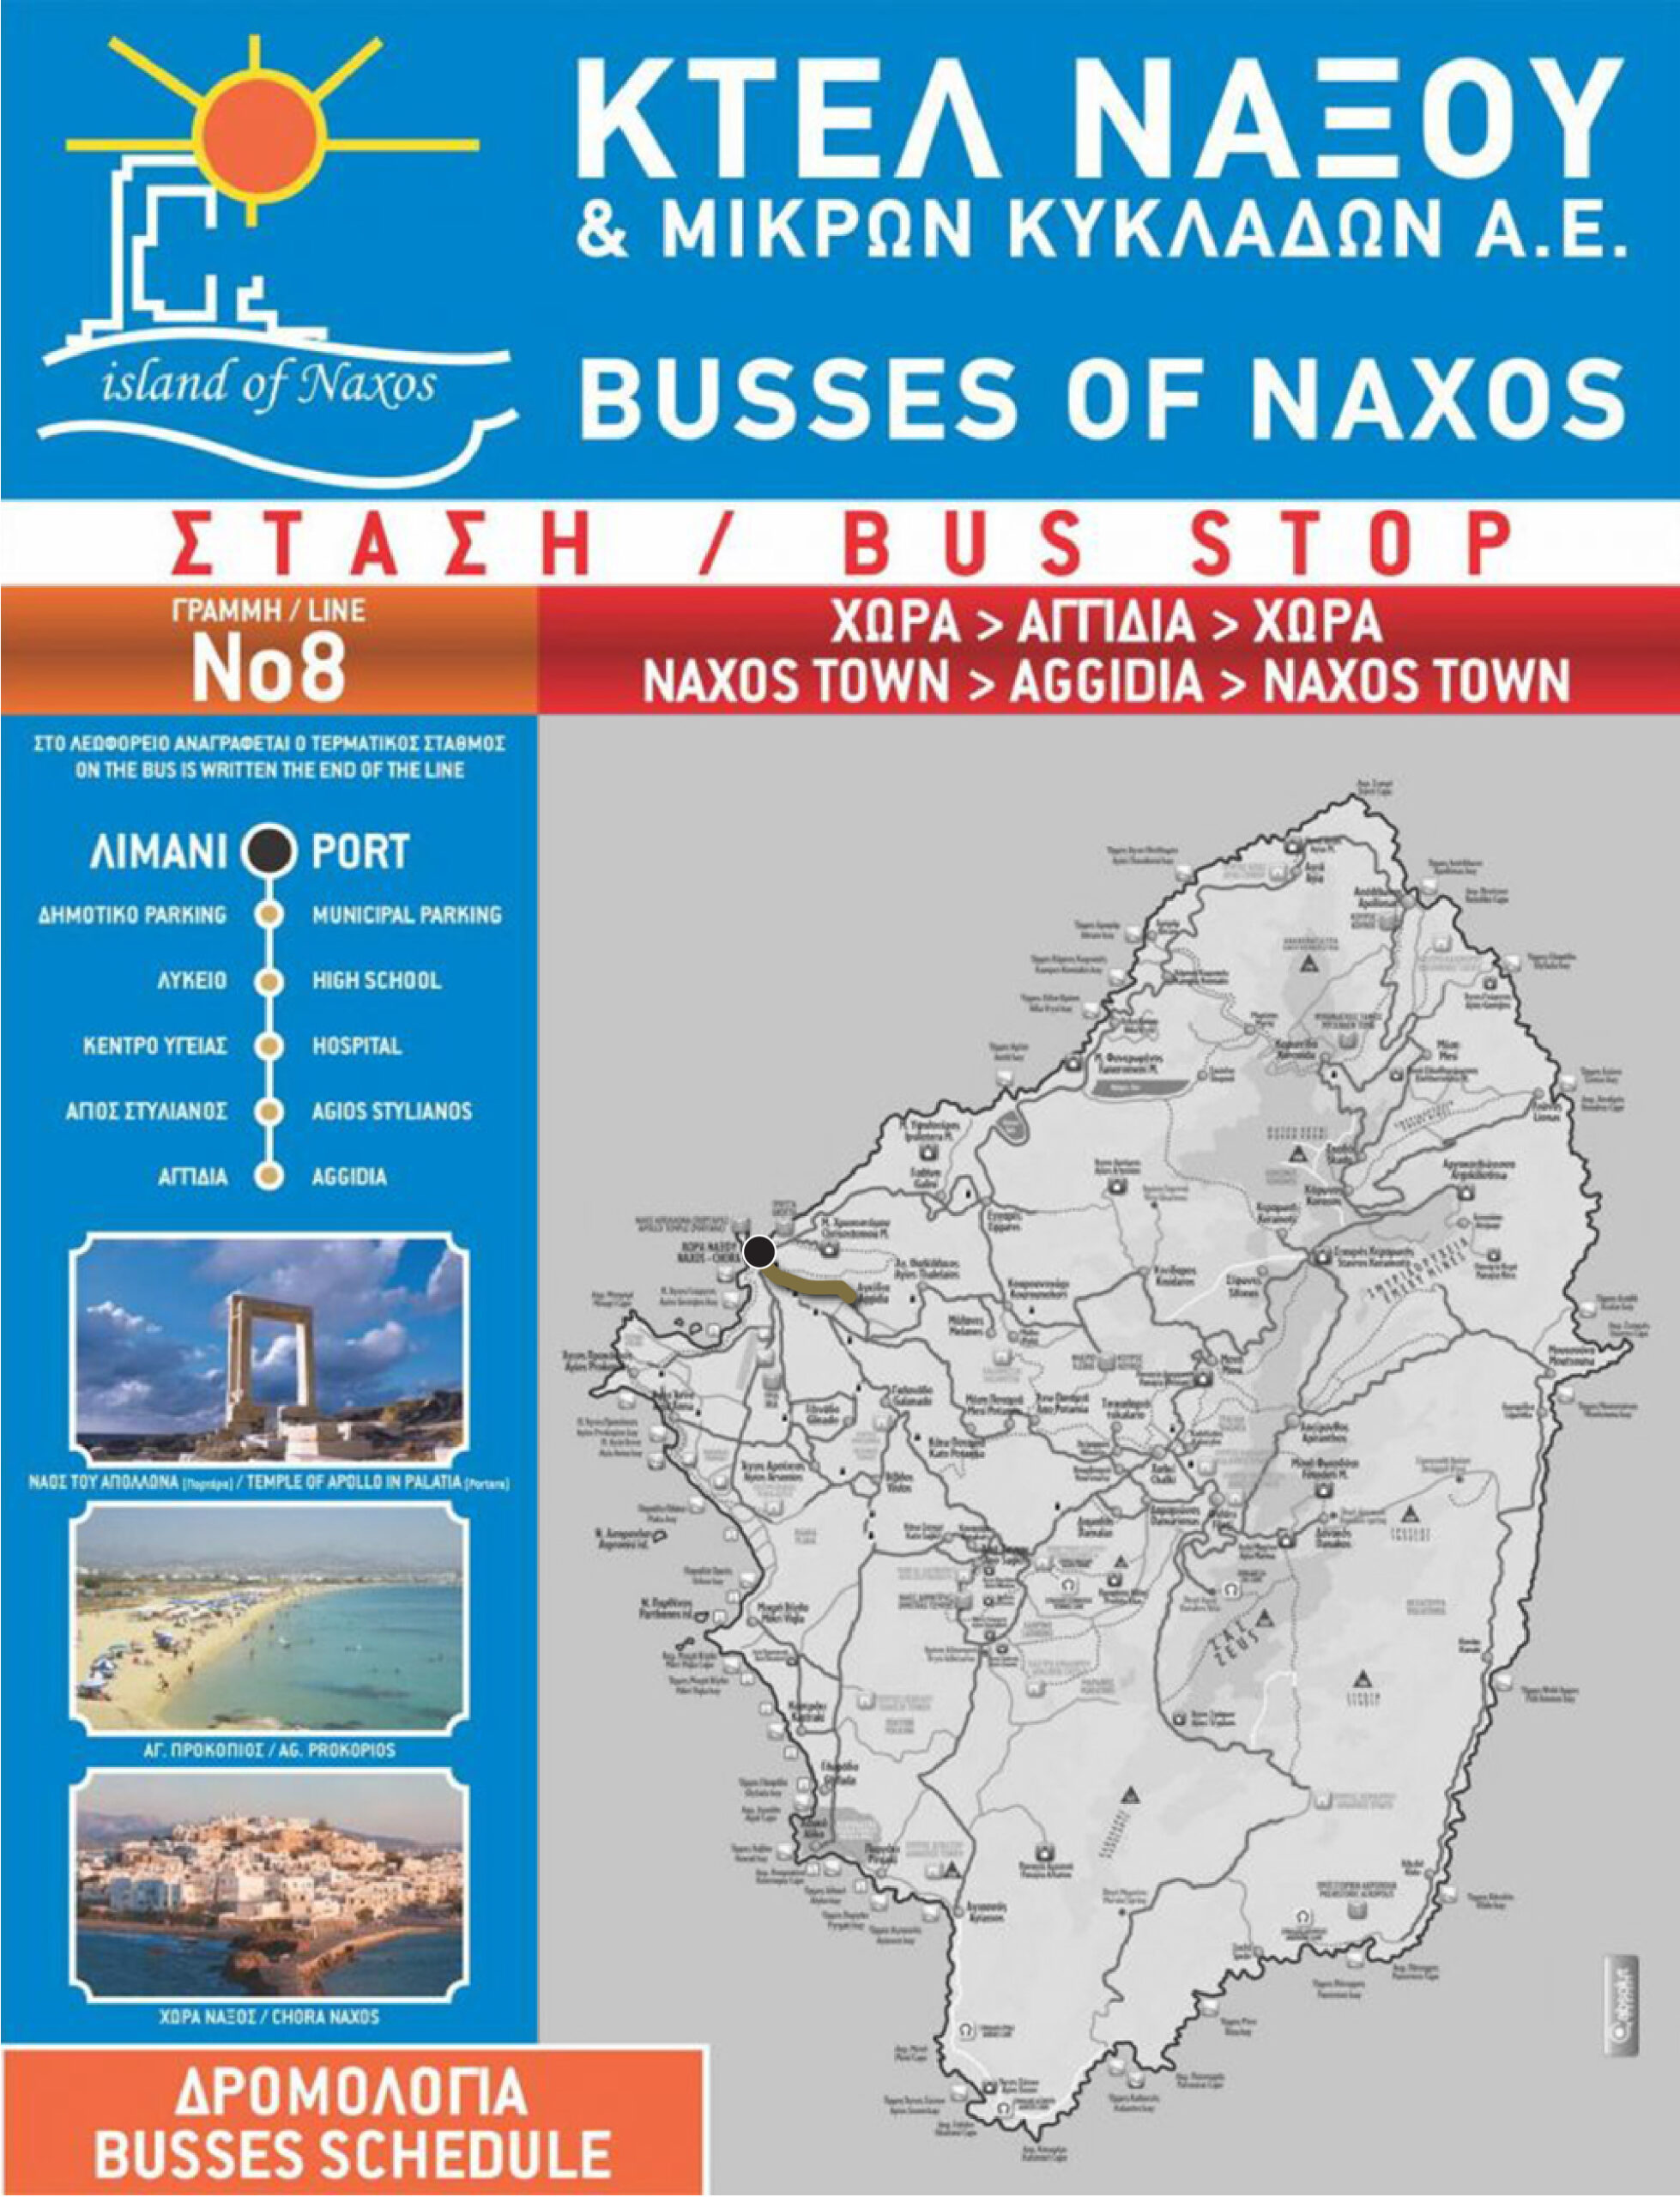 Naxos bus route #8.